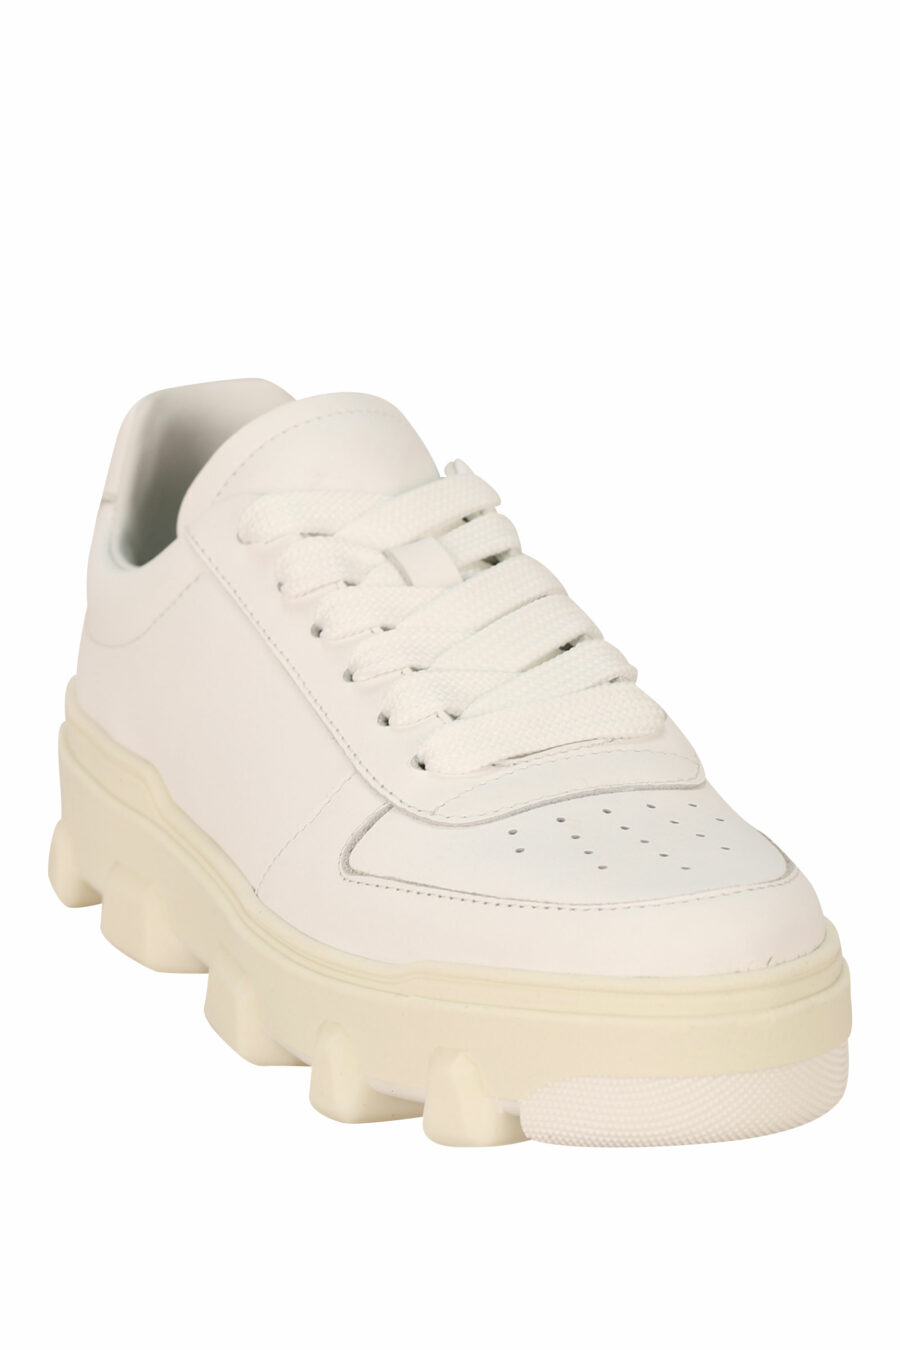 Zapatillas blancas con suela blanca y logo - 8055777311240 1